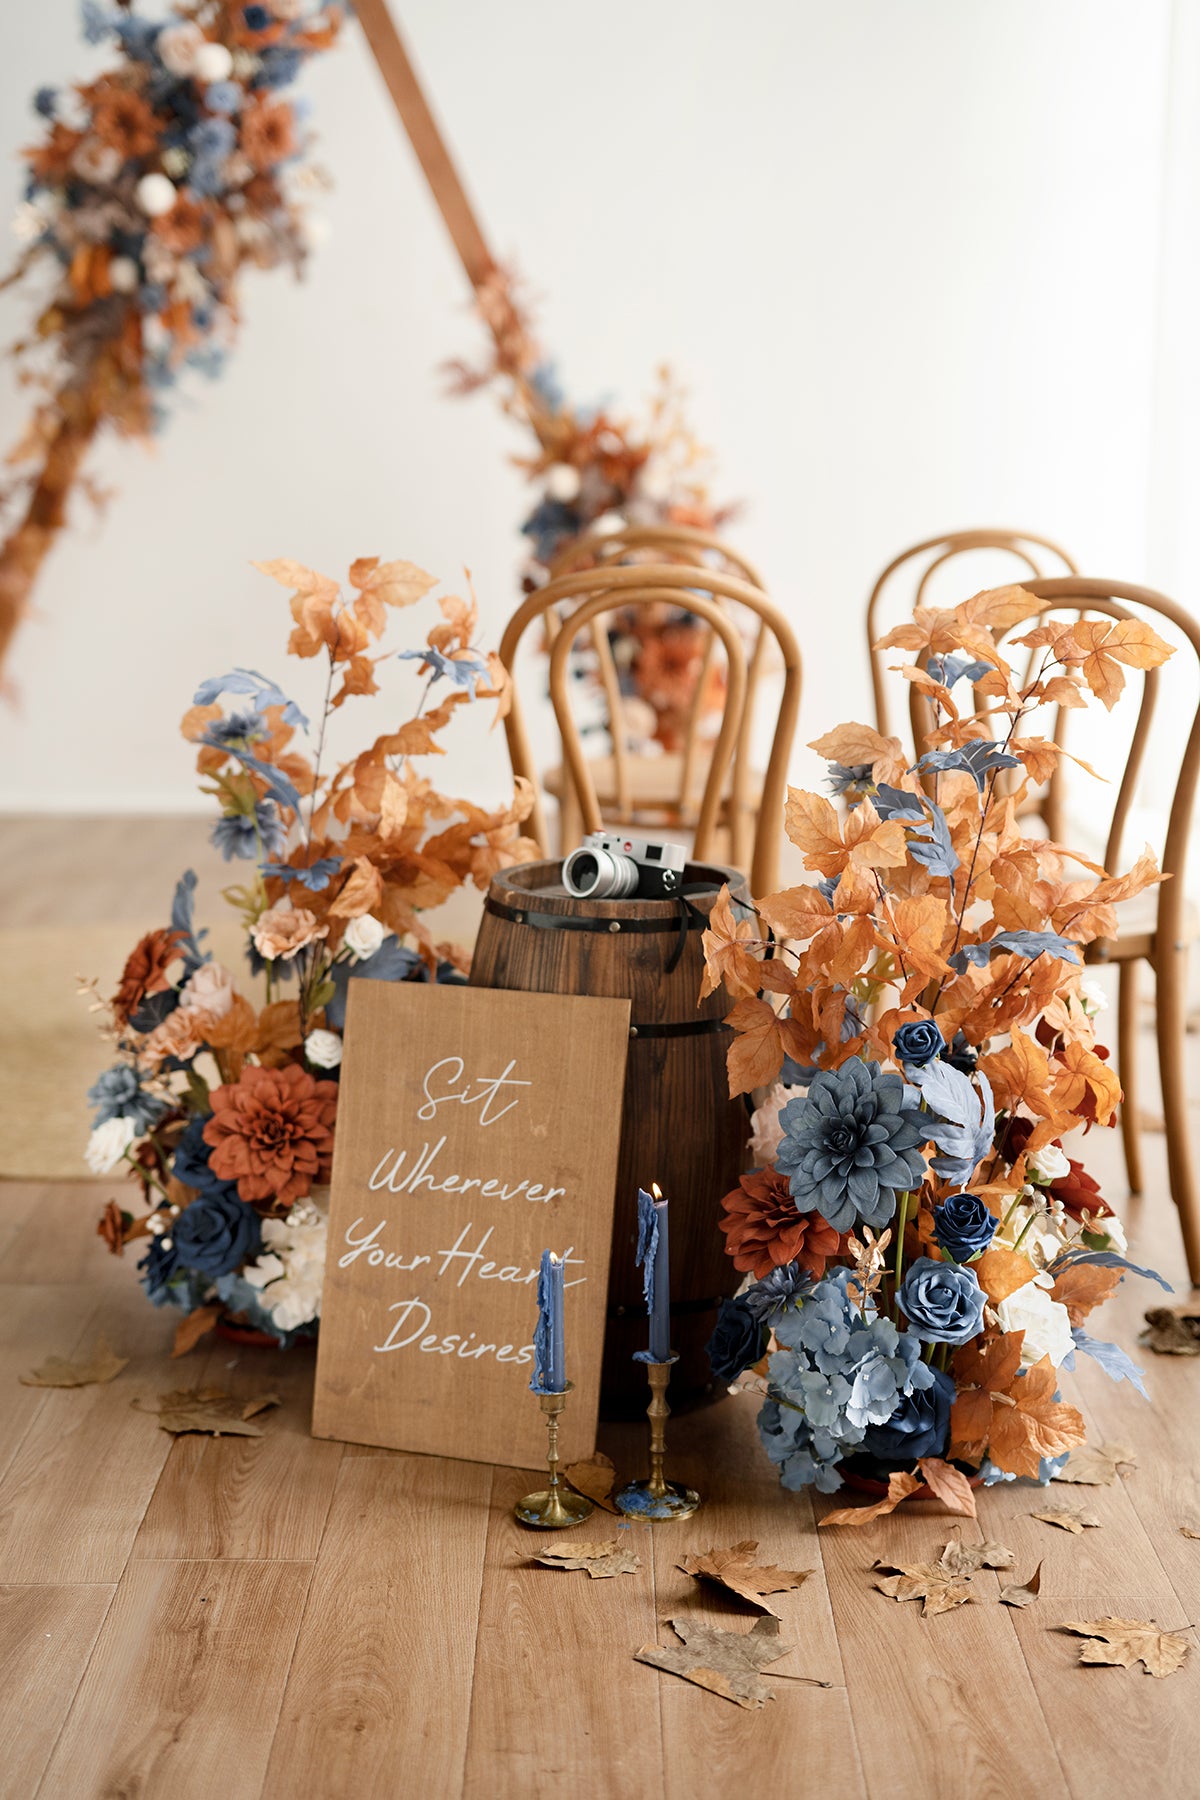 Oversized Free-Standing Ground Flower Arrangements in Russet Orange & Denim Blue